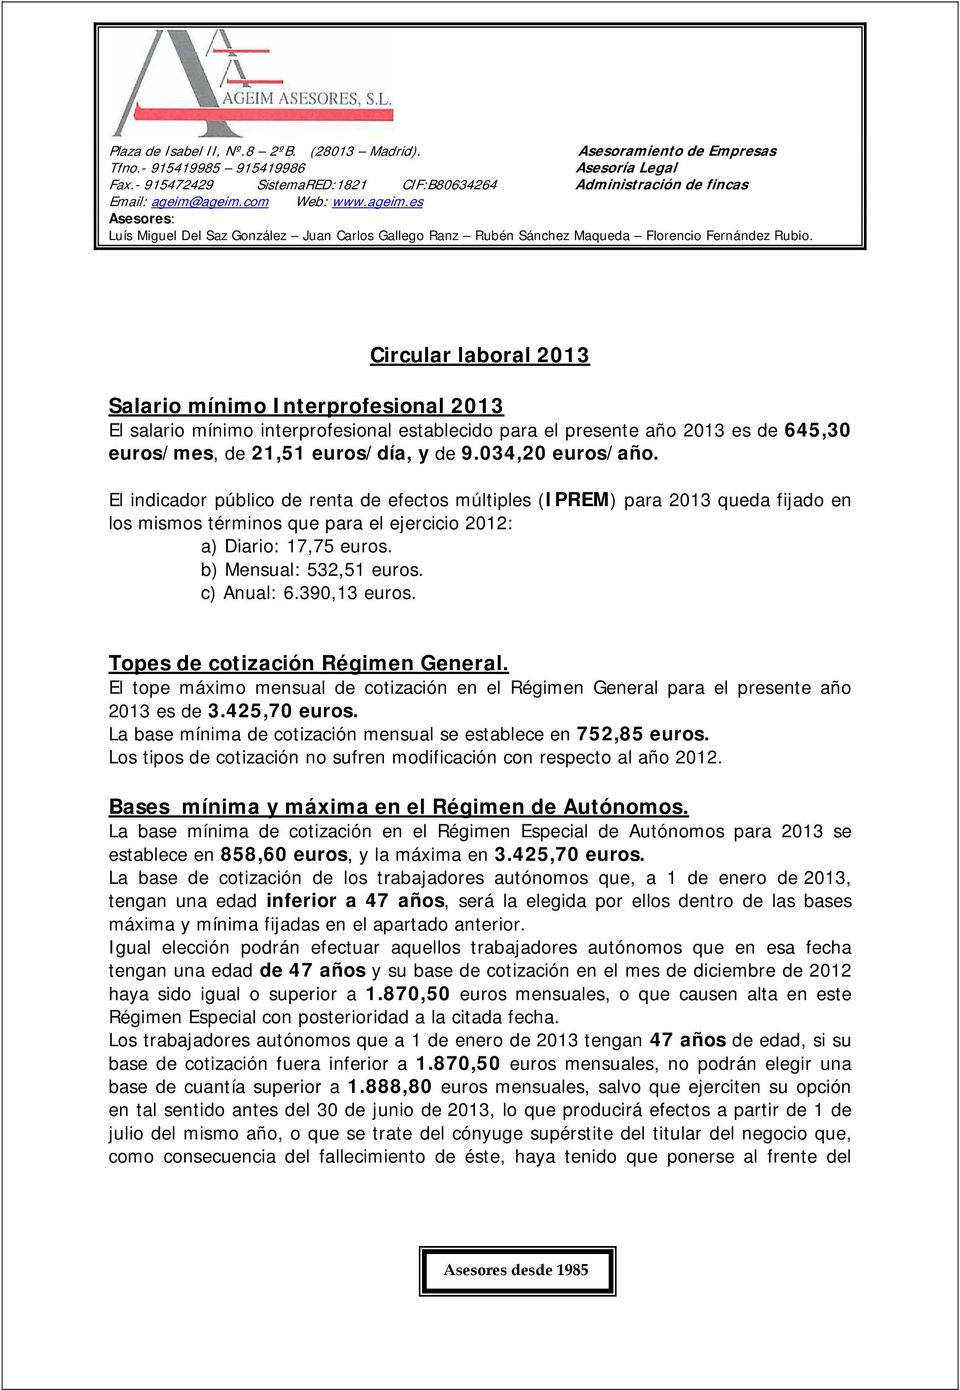 390,13 euros. Topes de cotización Régimen General. El tope máximo mensual de cotización en el Régimen General para el presente año 2013 es de 3.425,70 euros.